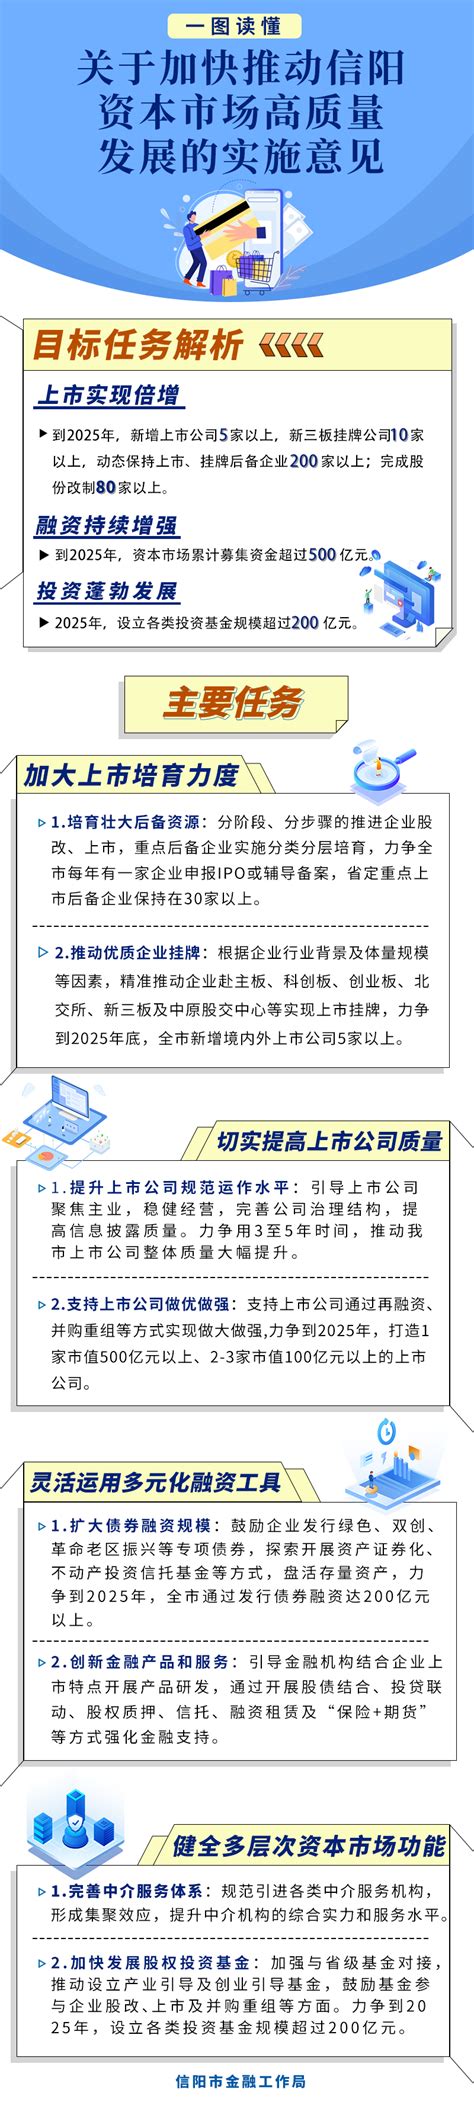 信阳华信投资集团拟发行不超5亿元短融，用于偿还有息债务